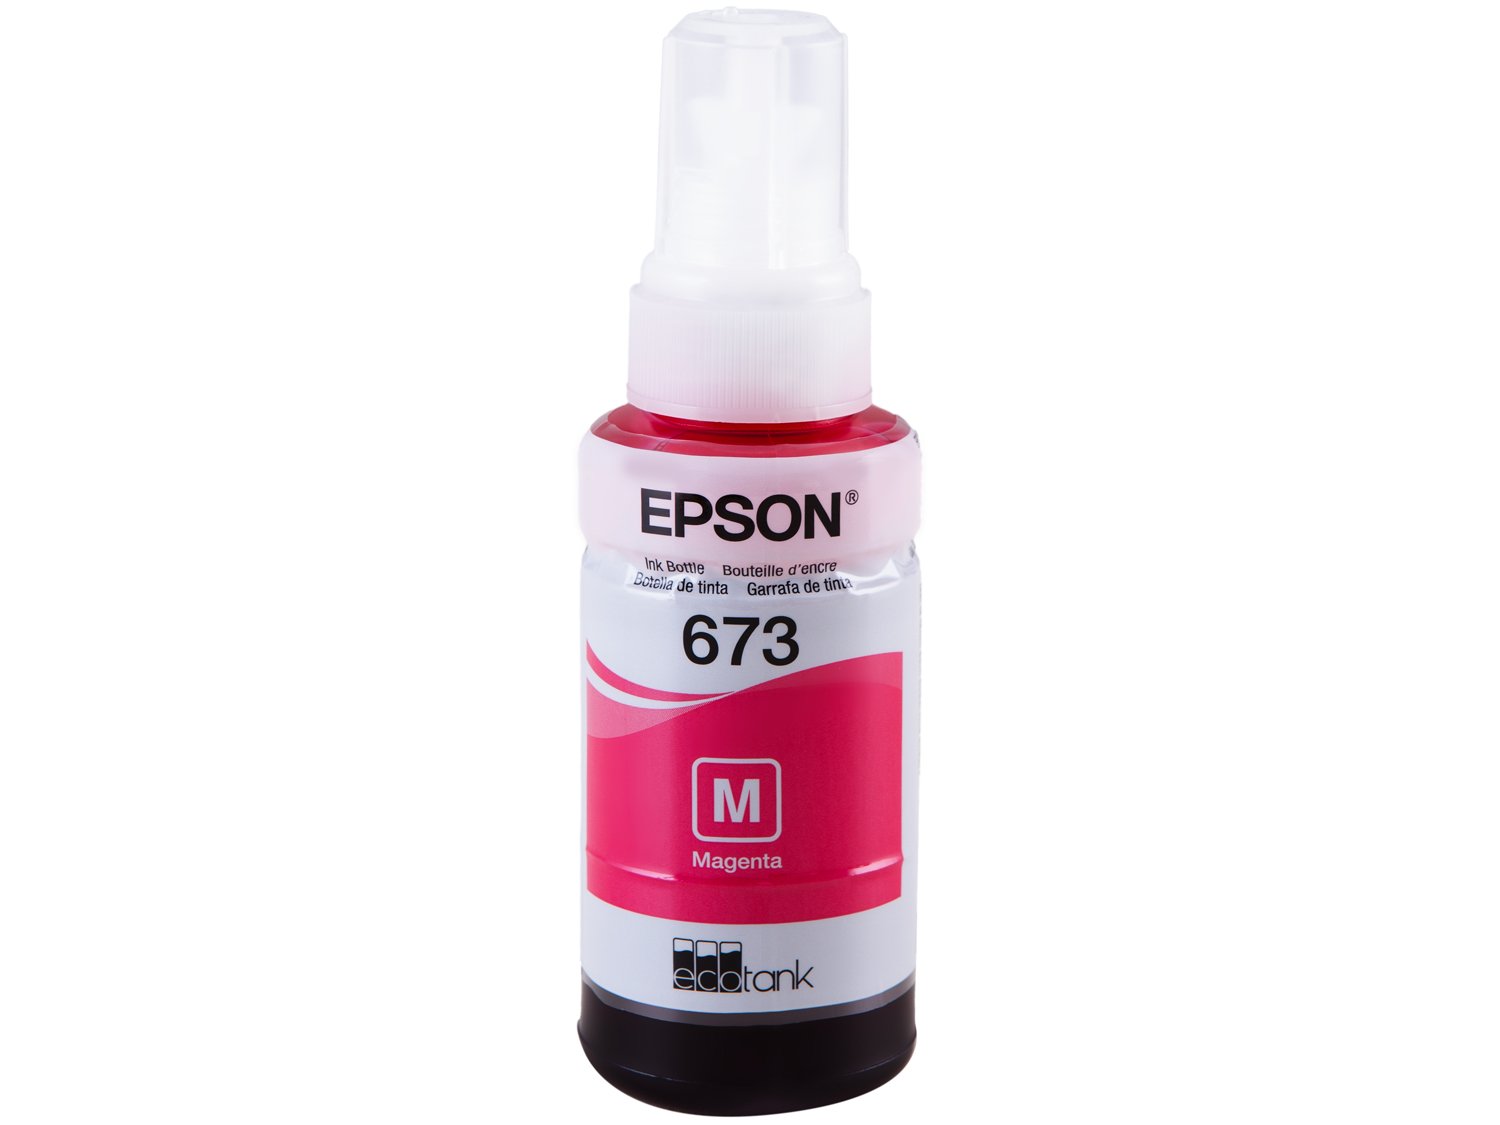 Garrafa de Tinta Epson EcoTank T673 para Impressoras L800, L805, L850 e L1800 - Magenta